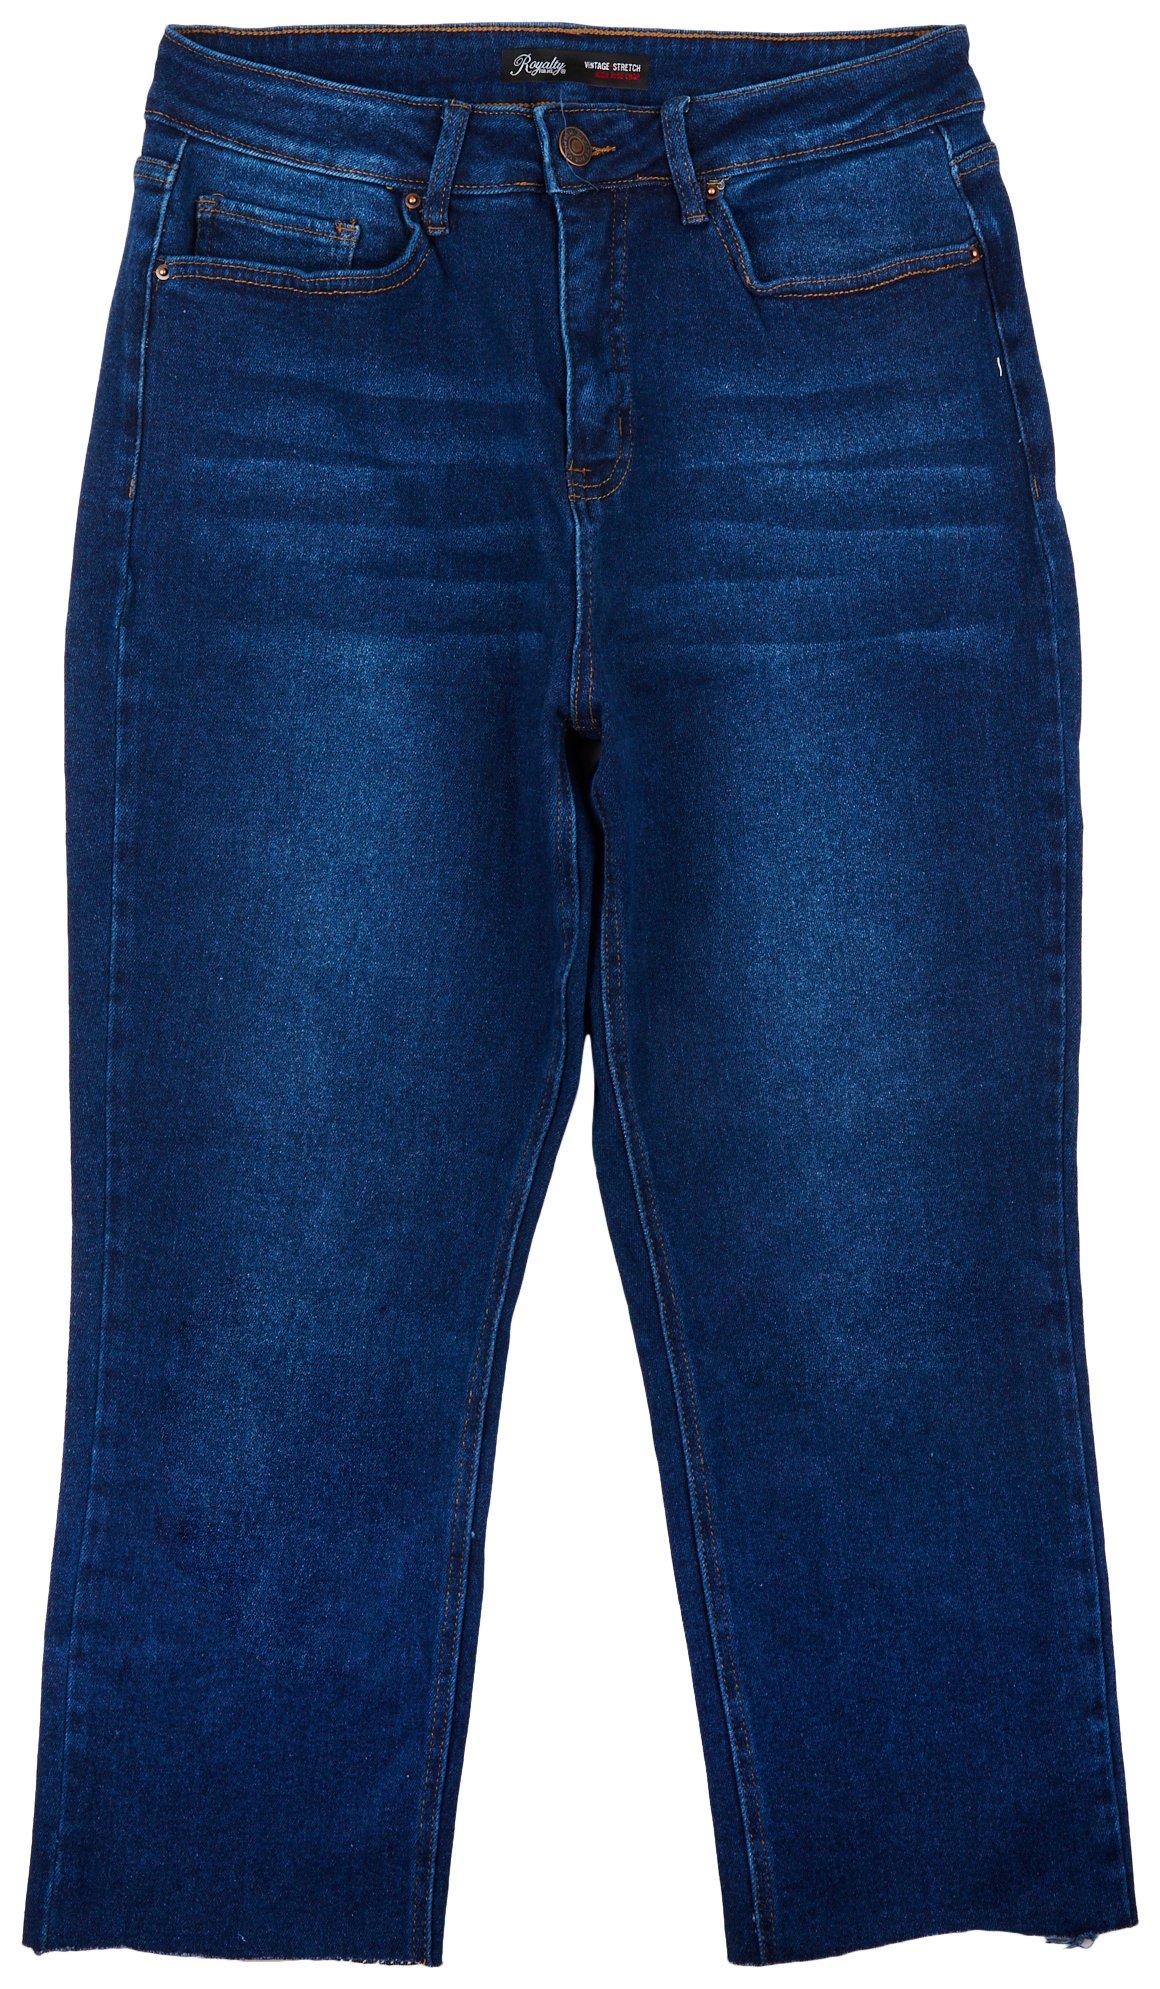 d. jeans Capris for Women - Poshmark